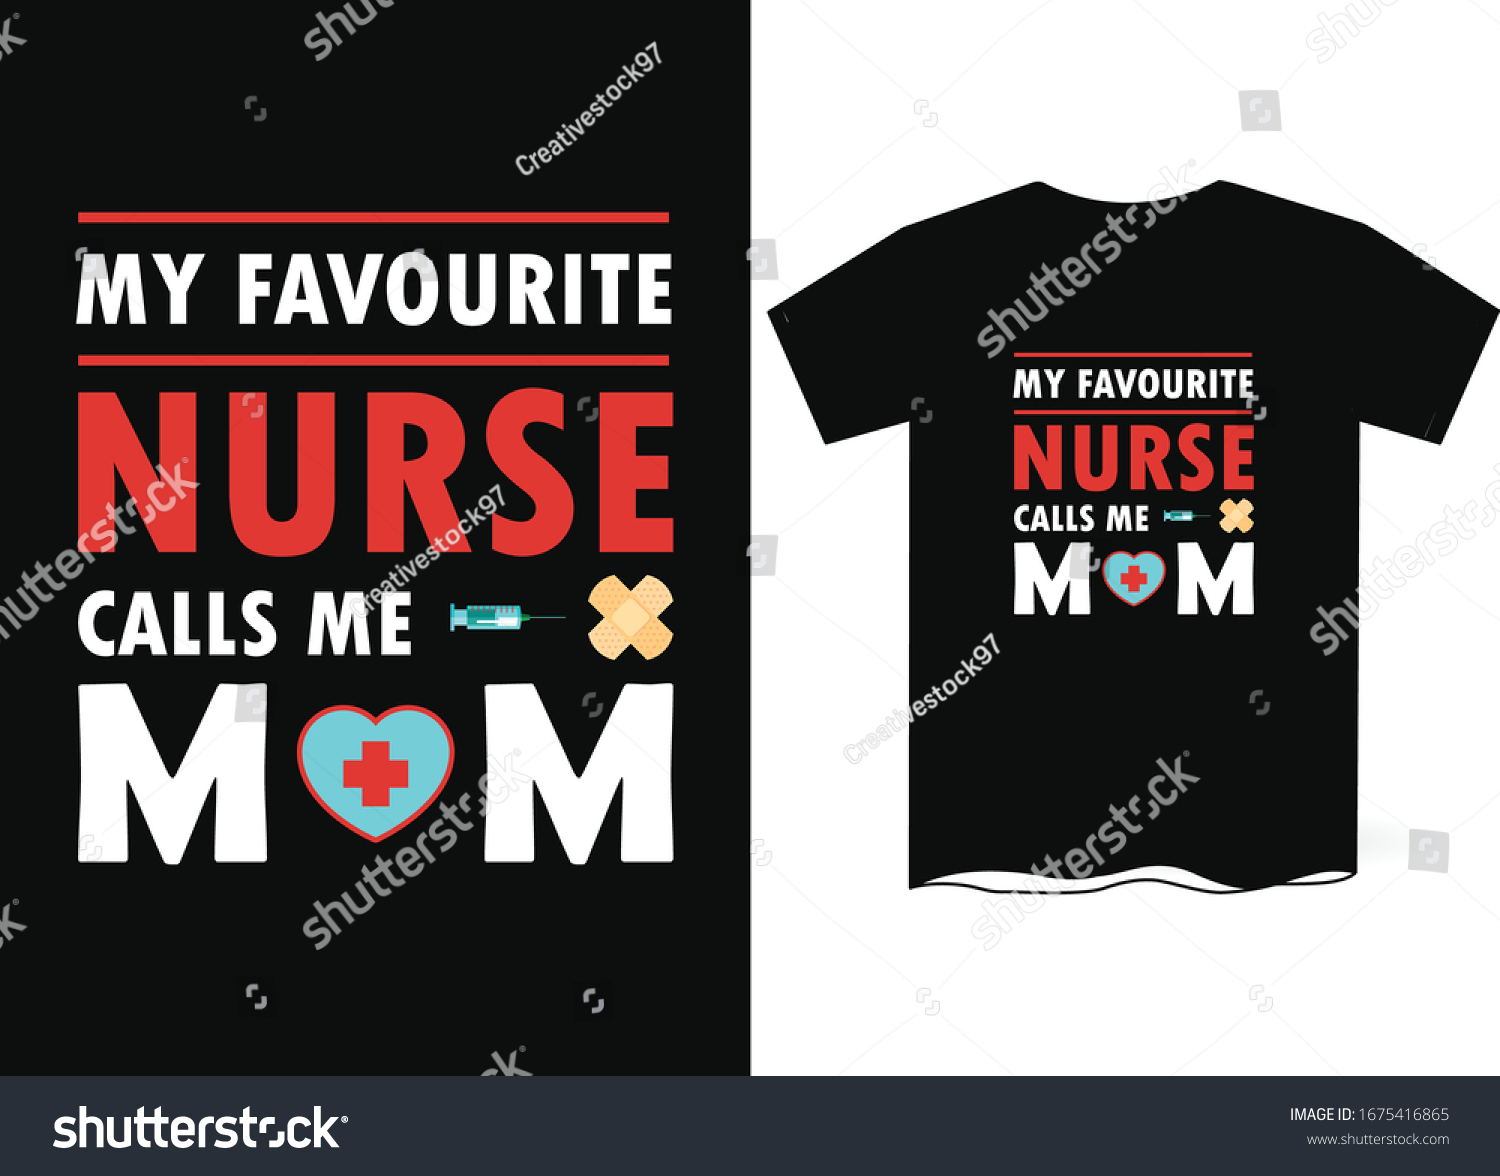 Nurse Tshirt Template Design Nurse Vector Stock Vector (Royalty Free ...